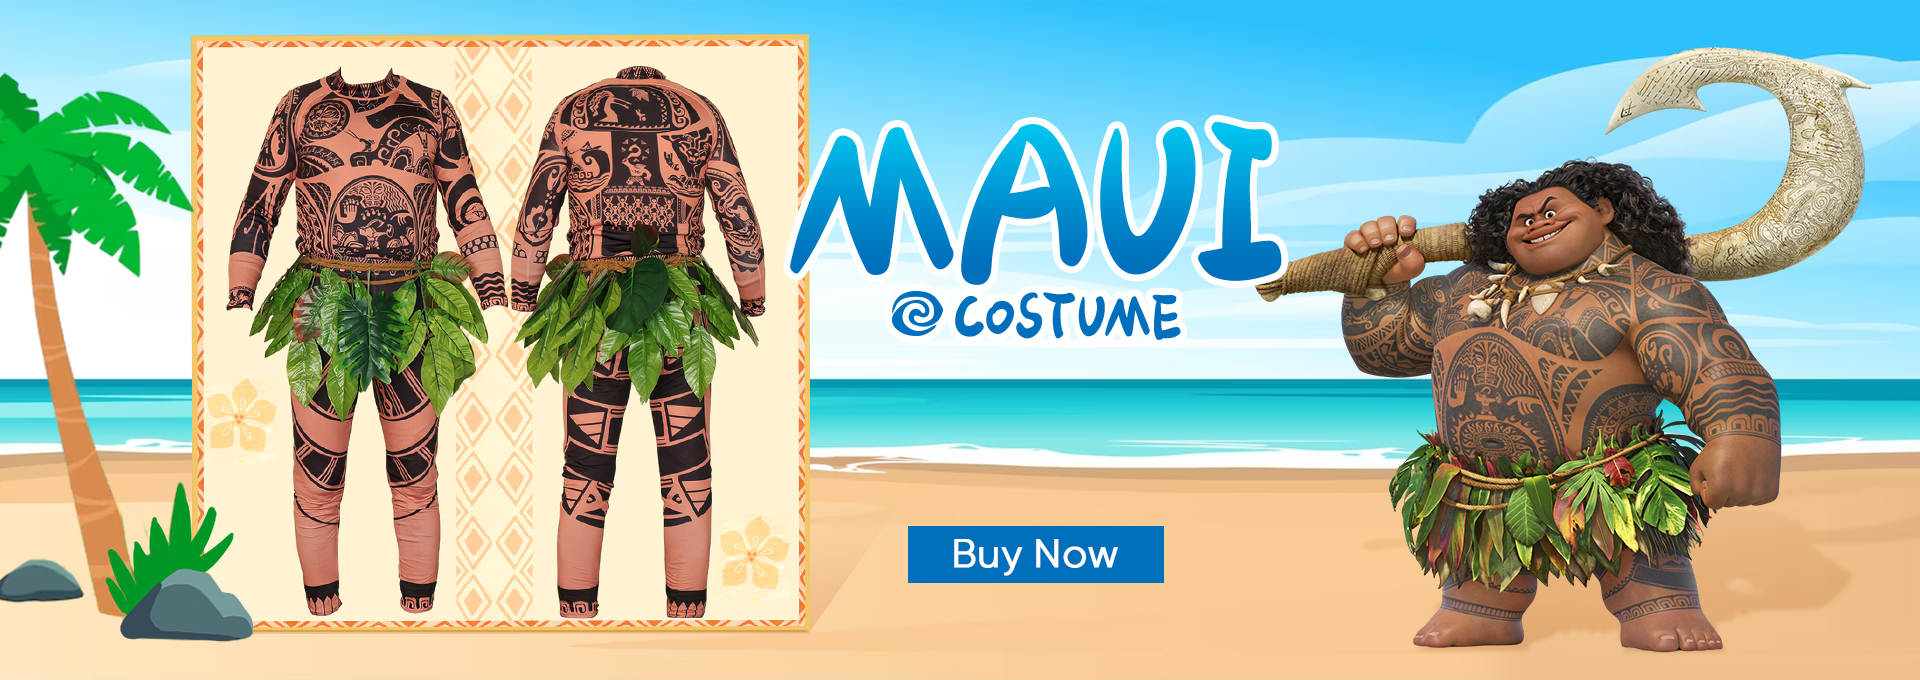 Maui Costume, Official Maui Costume